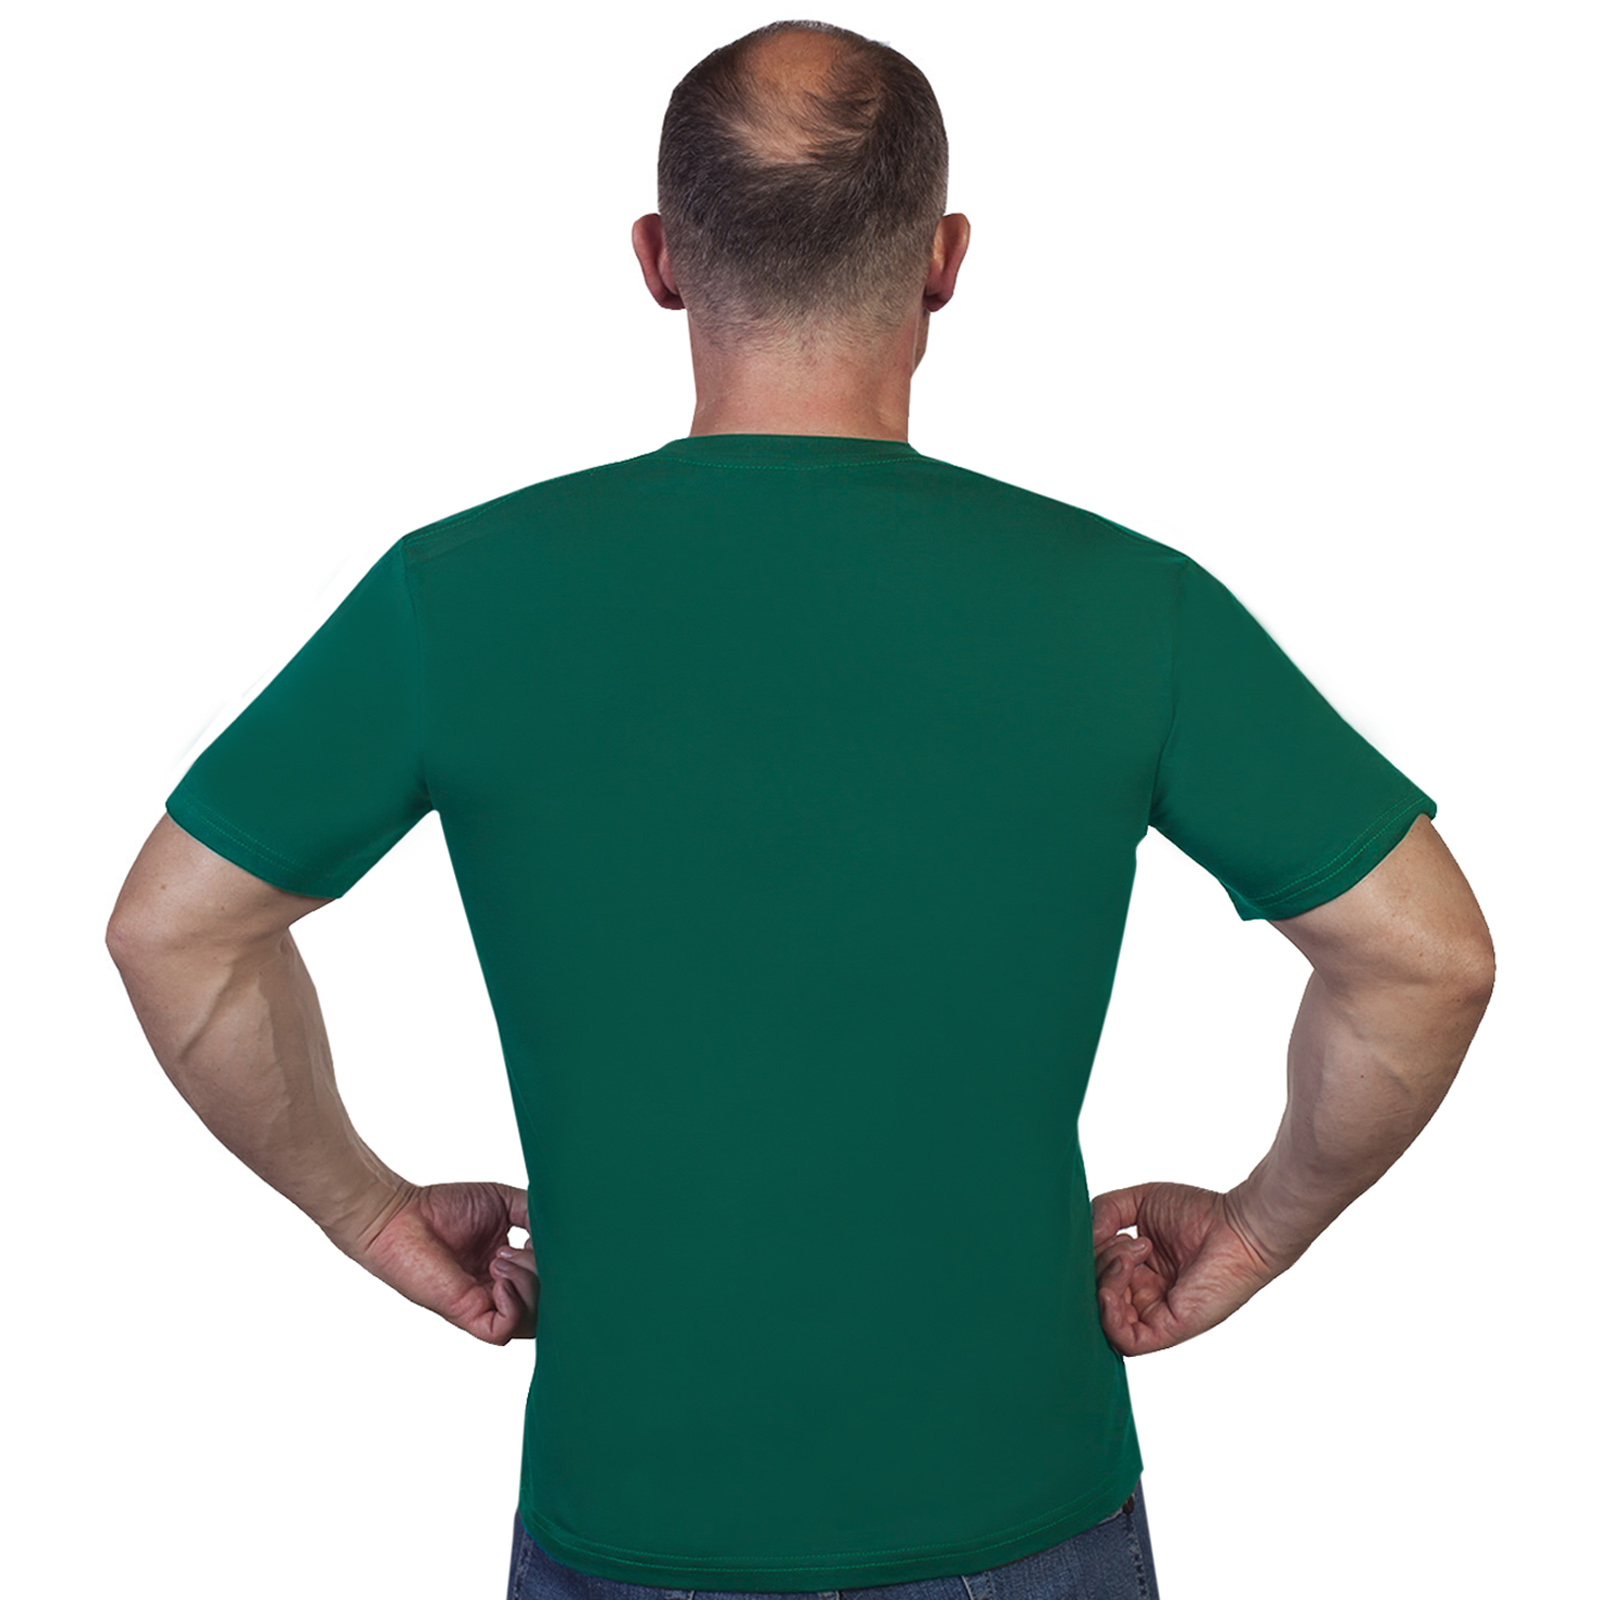 Зелёная футболка "42 Дербентский пограничный отряд" 